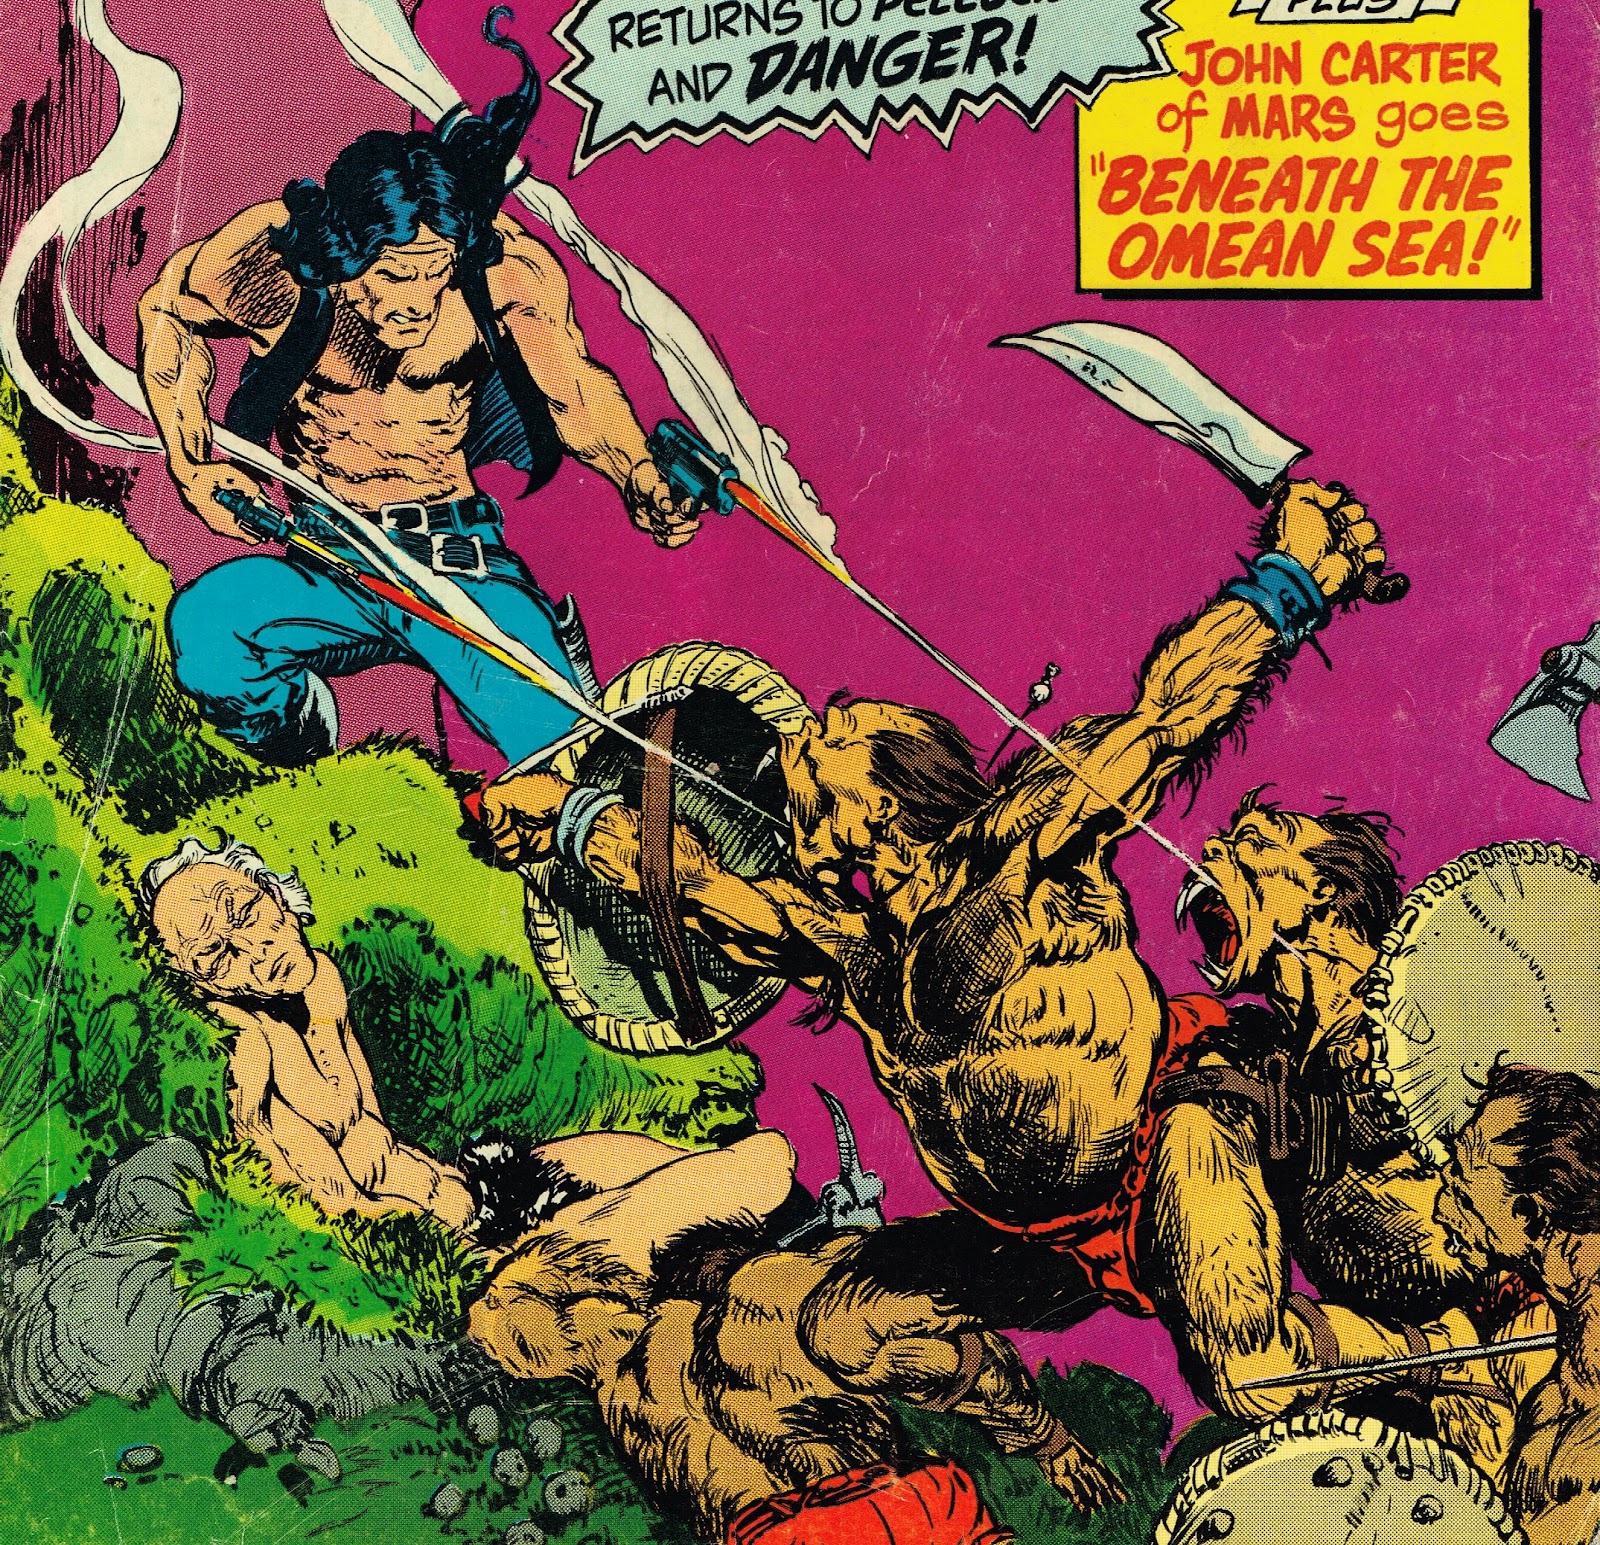 Cap'n's Comics: The Forgotten Fantasies of Mike Kaluta